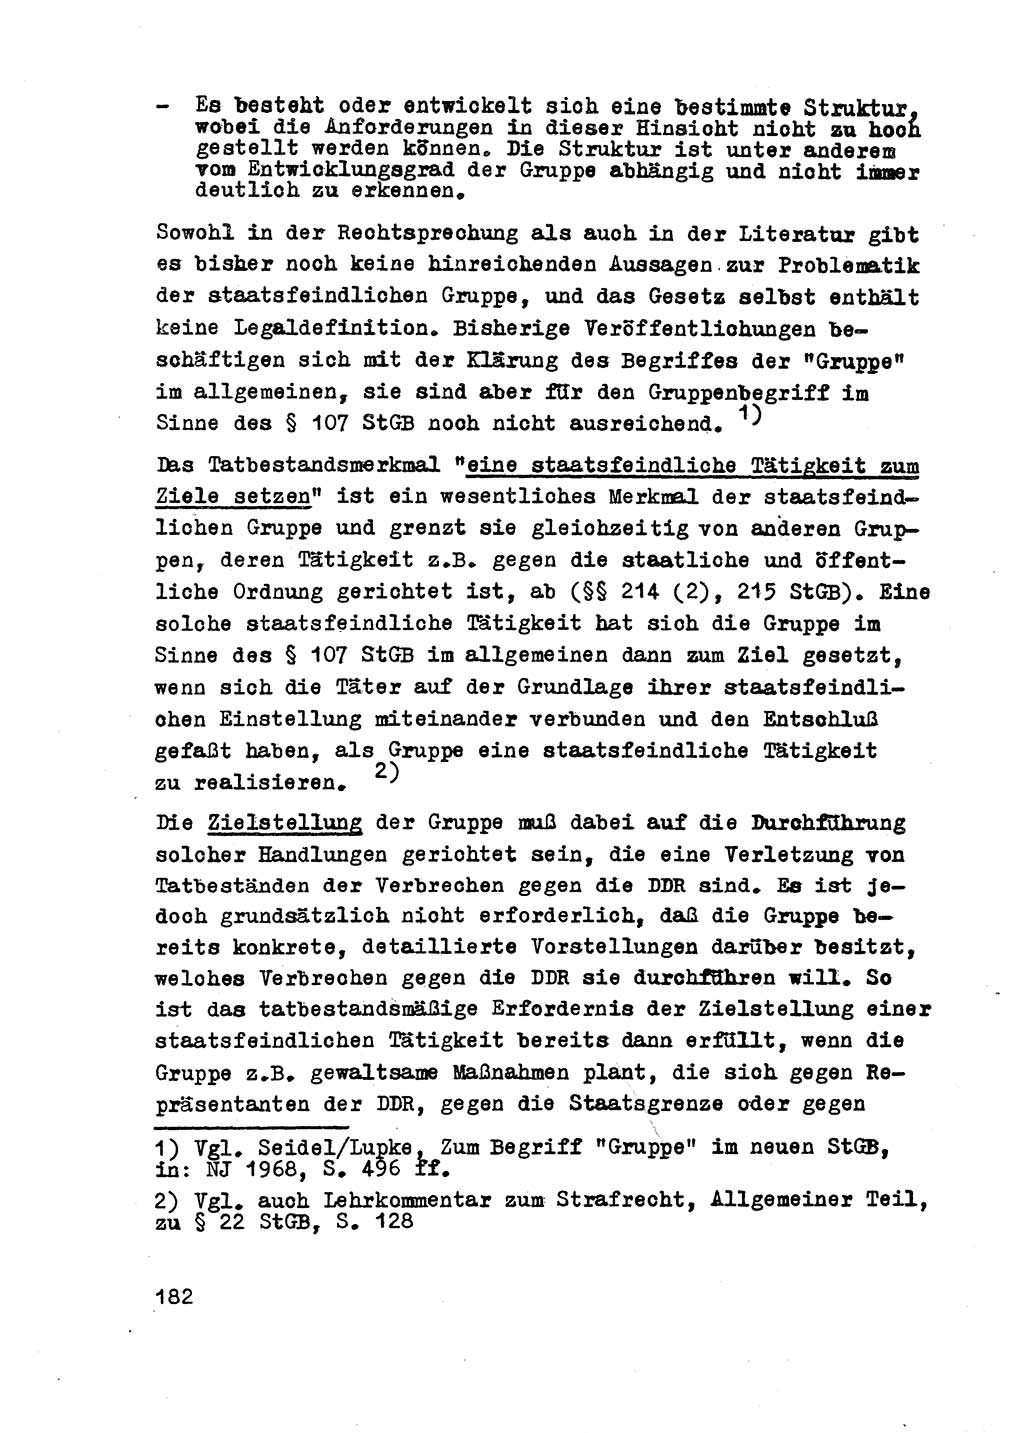 Strafrecht der DDR (Deutsche Demokratische Republik), Besonderer Teil, Lehrmaterial, Heft 2 1969, Seite 182 (Strafr. DDR BT Lehrmat. H. 2 1969, S. 182)